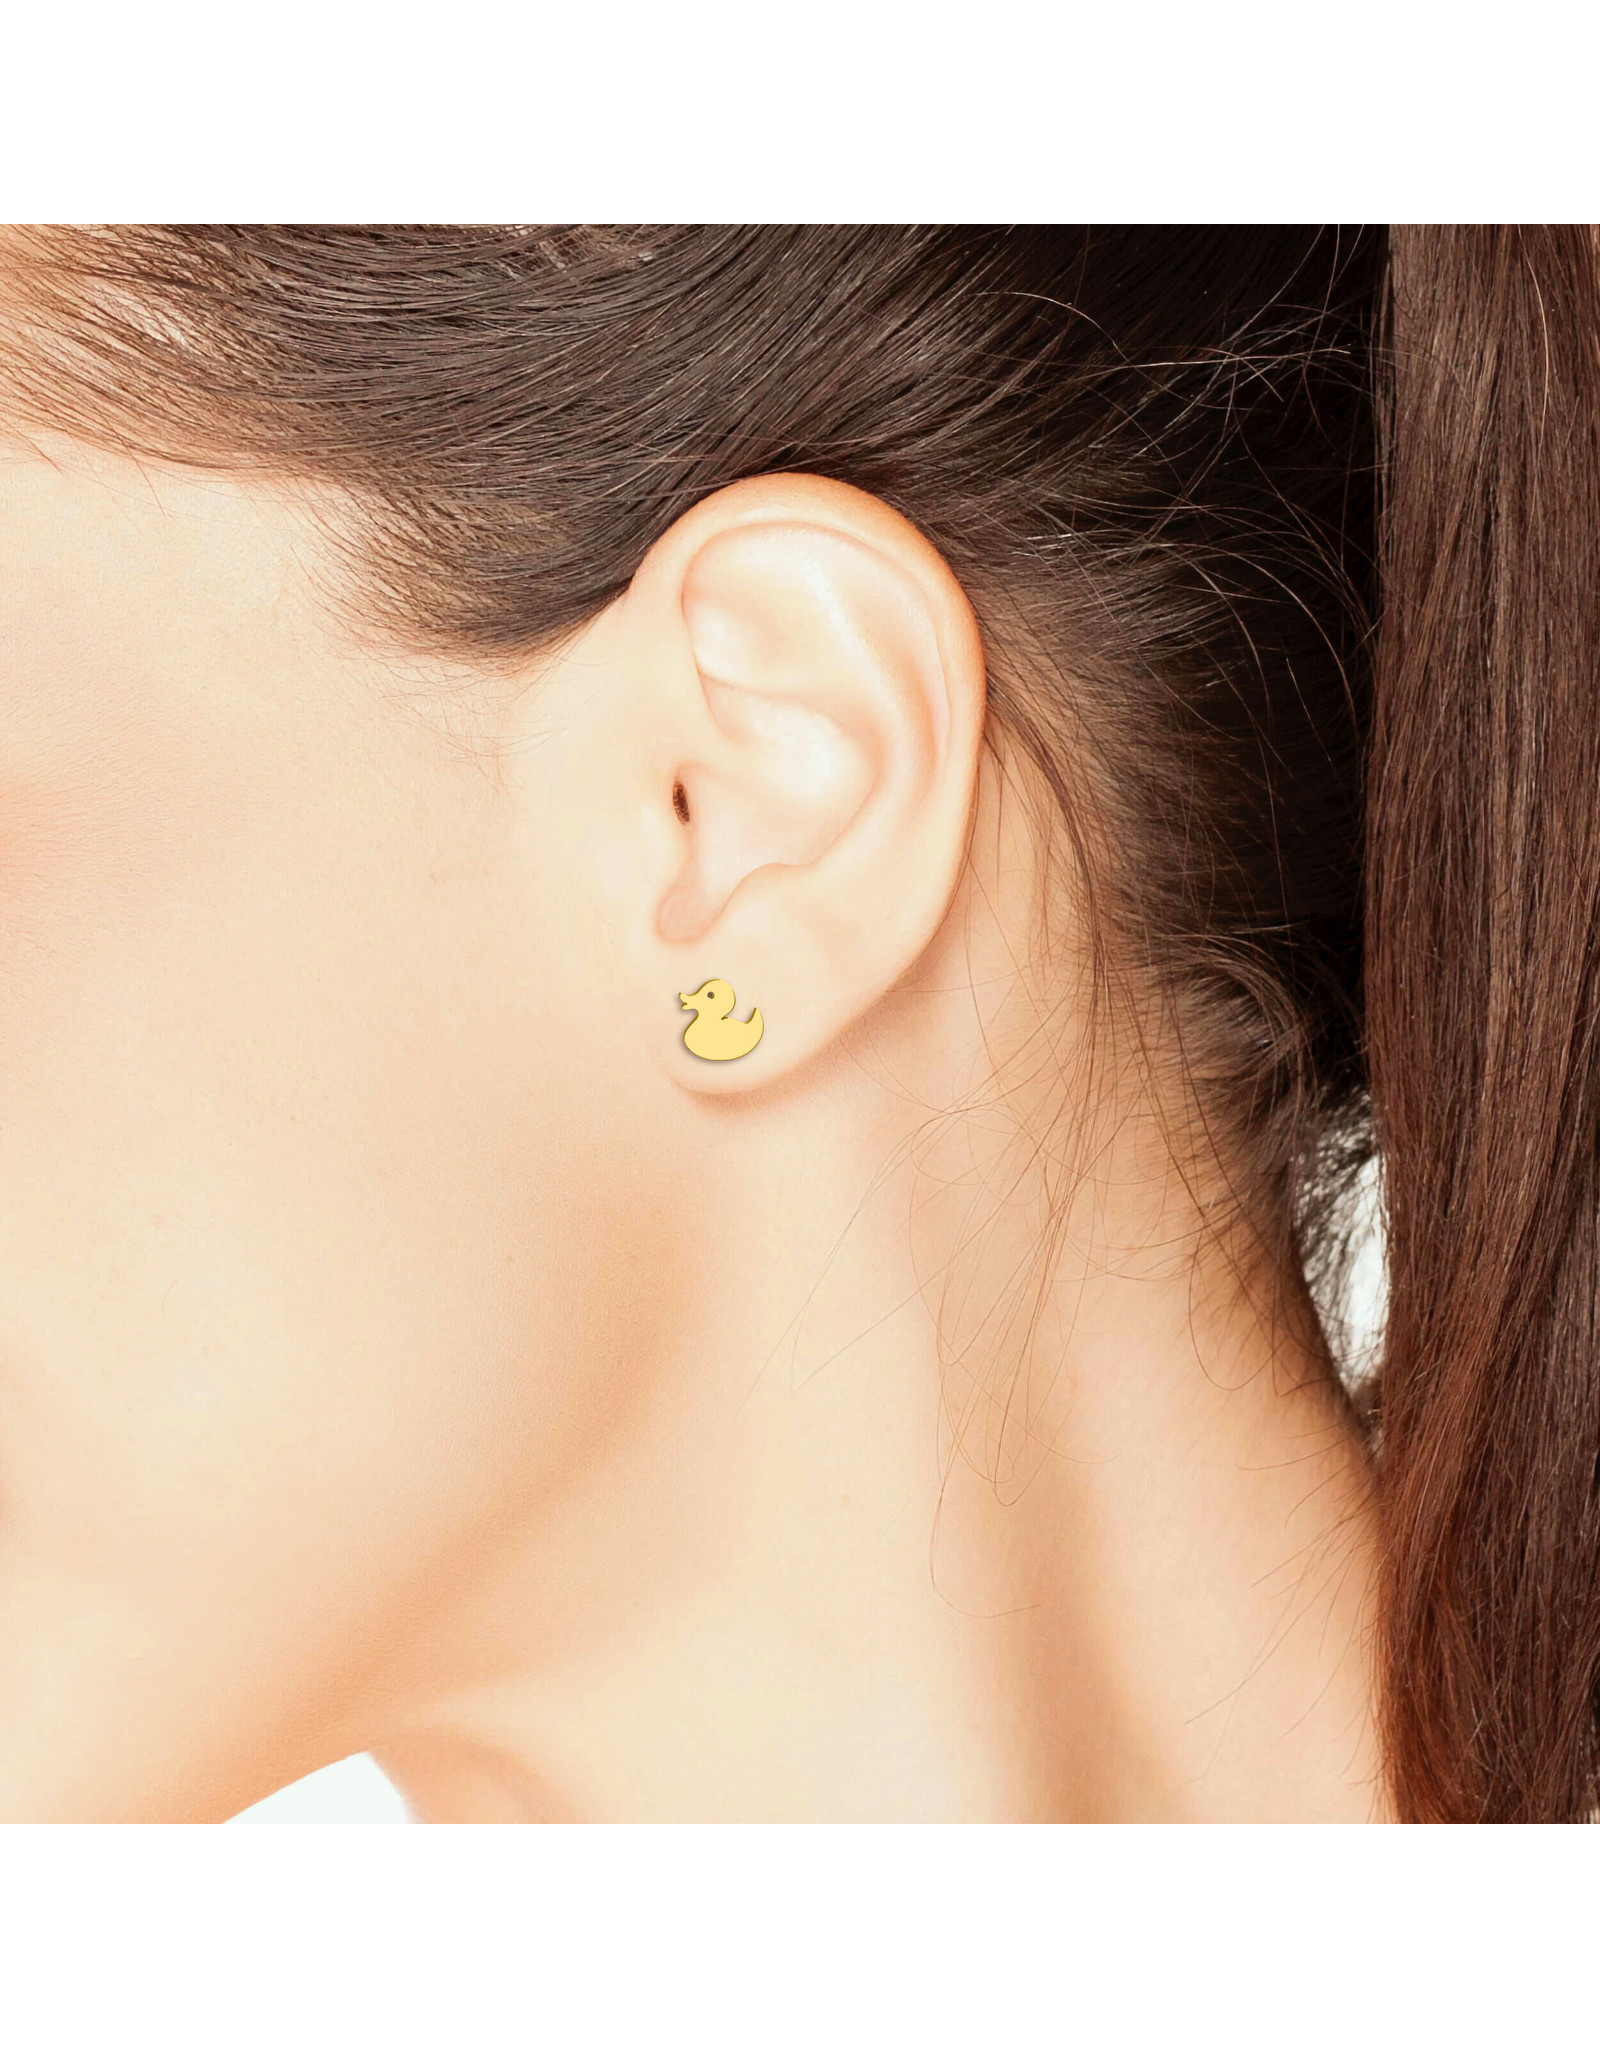 Boucles d'oreilles en forme de canard - or